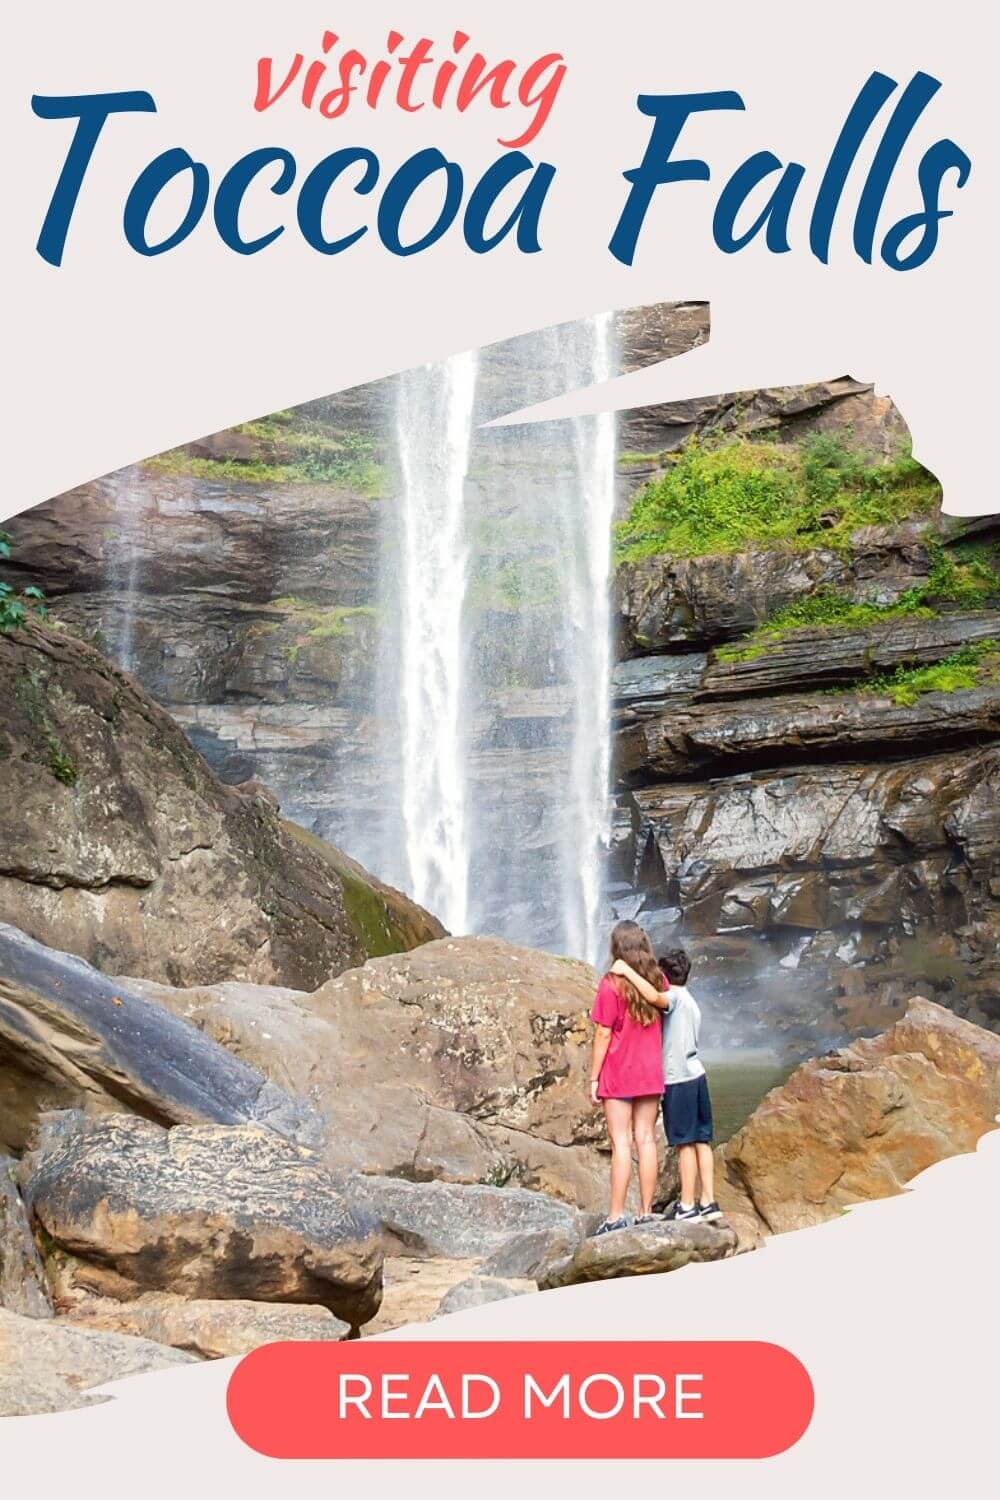 Visiting Toccoa Falls USA Travel Guide